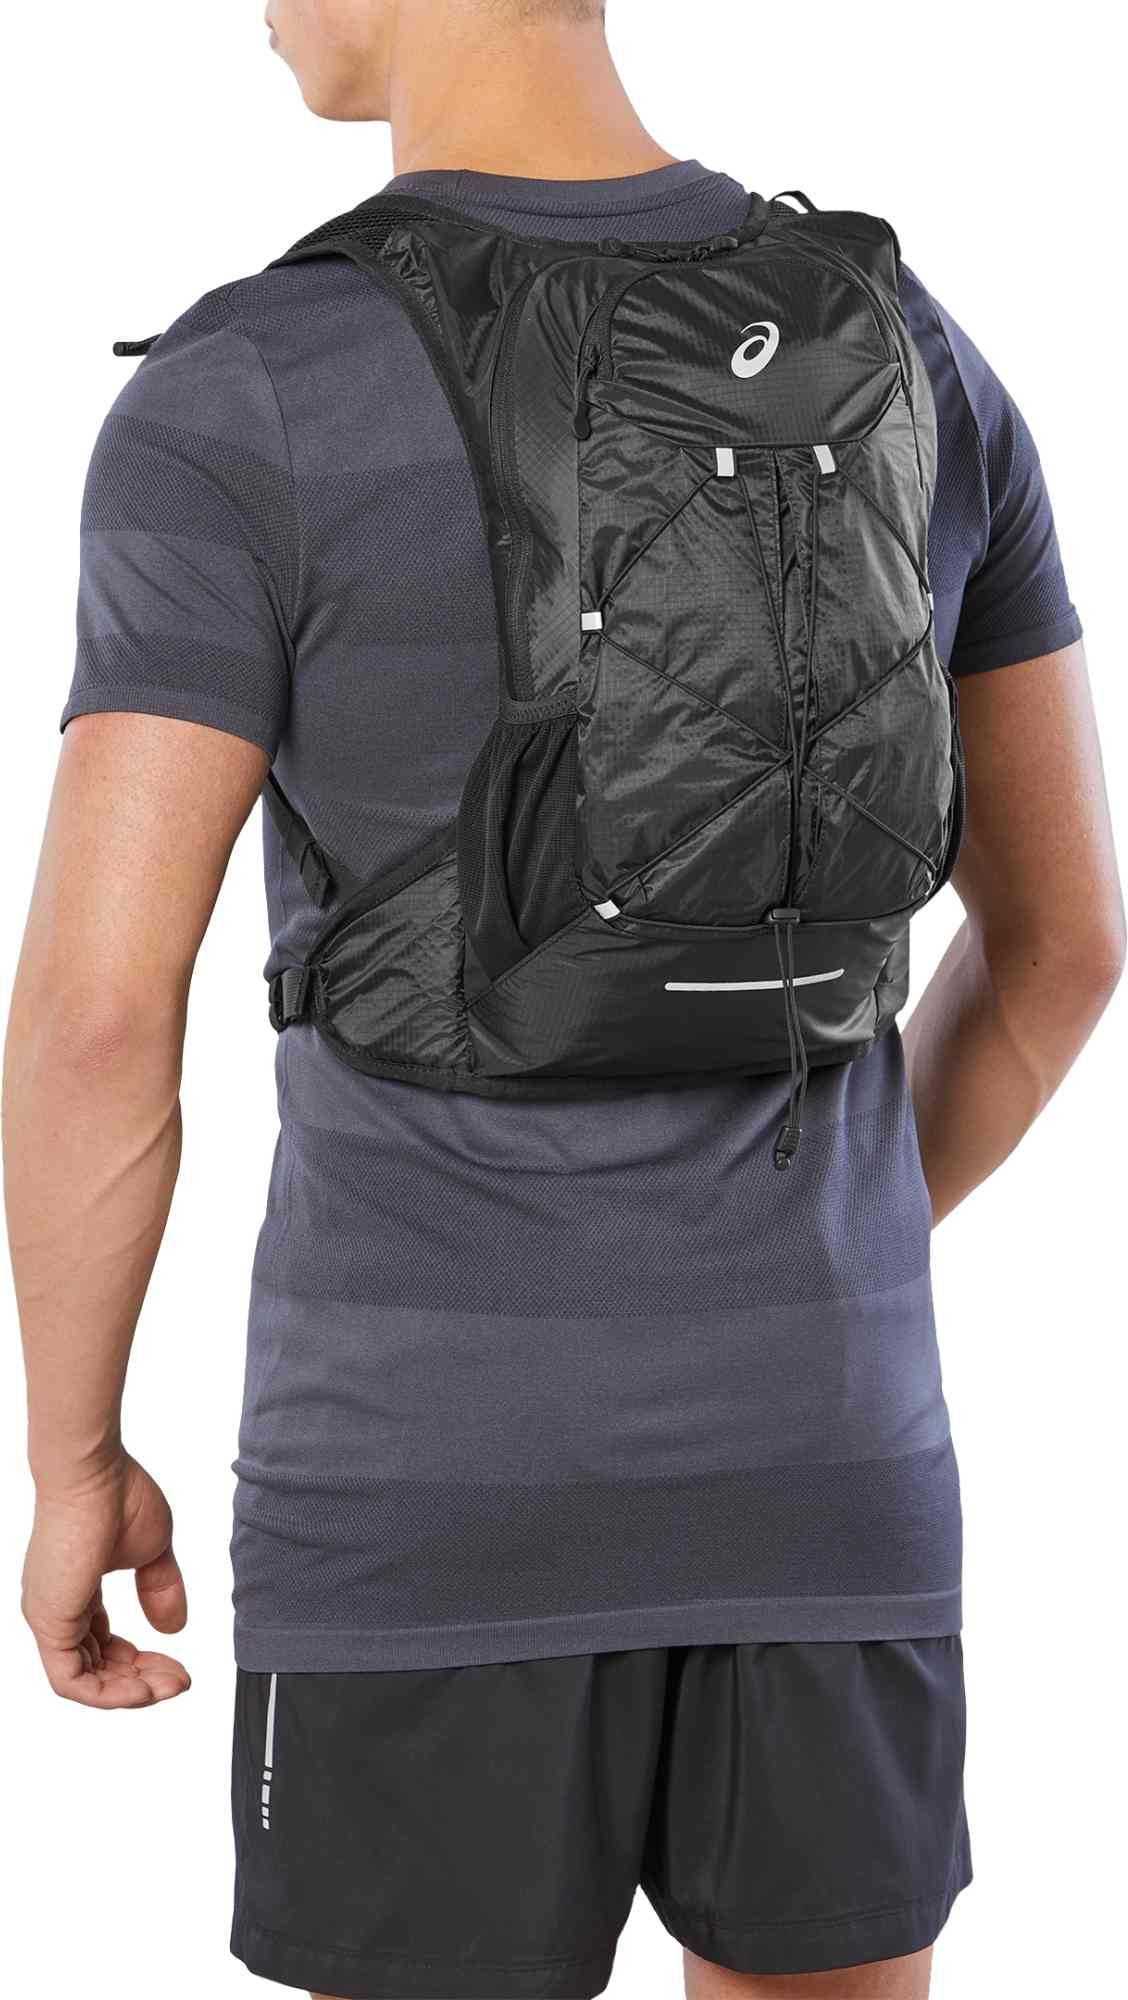 Running backpack